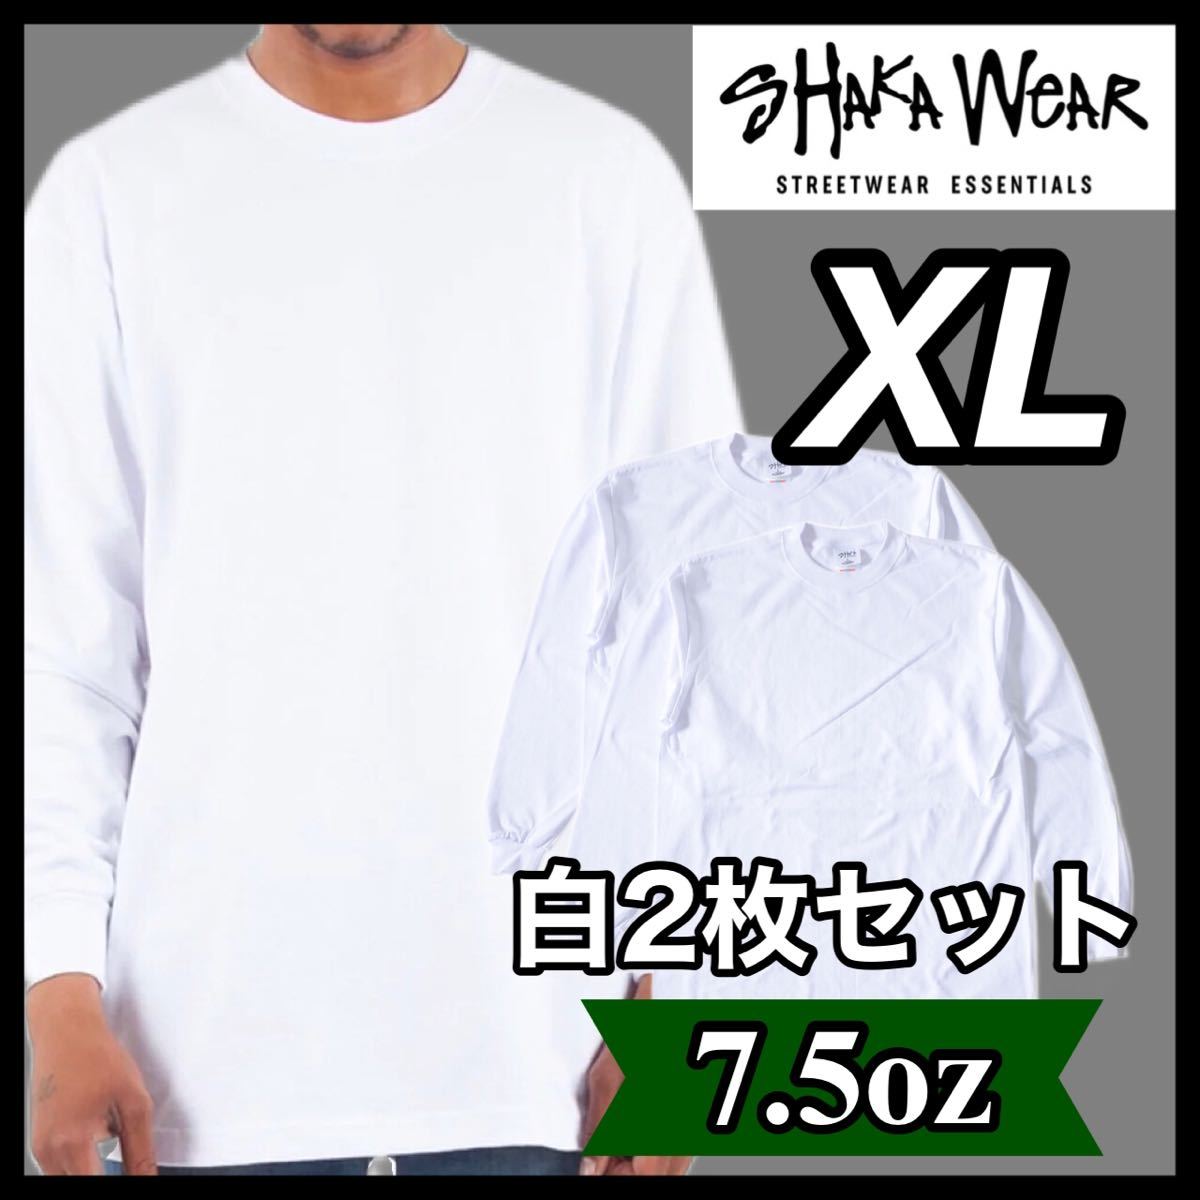 新品 シャカウェア 7.5oz ヘビーウエイト 無地 長袖Tシャツ 白 ホワイト 2枚セット XL_画像1